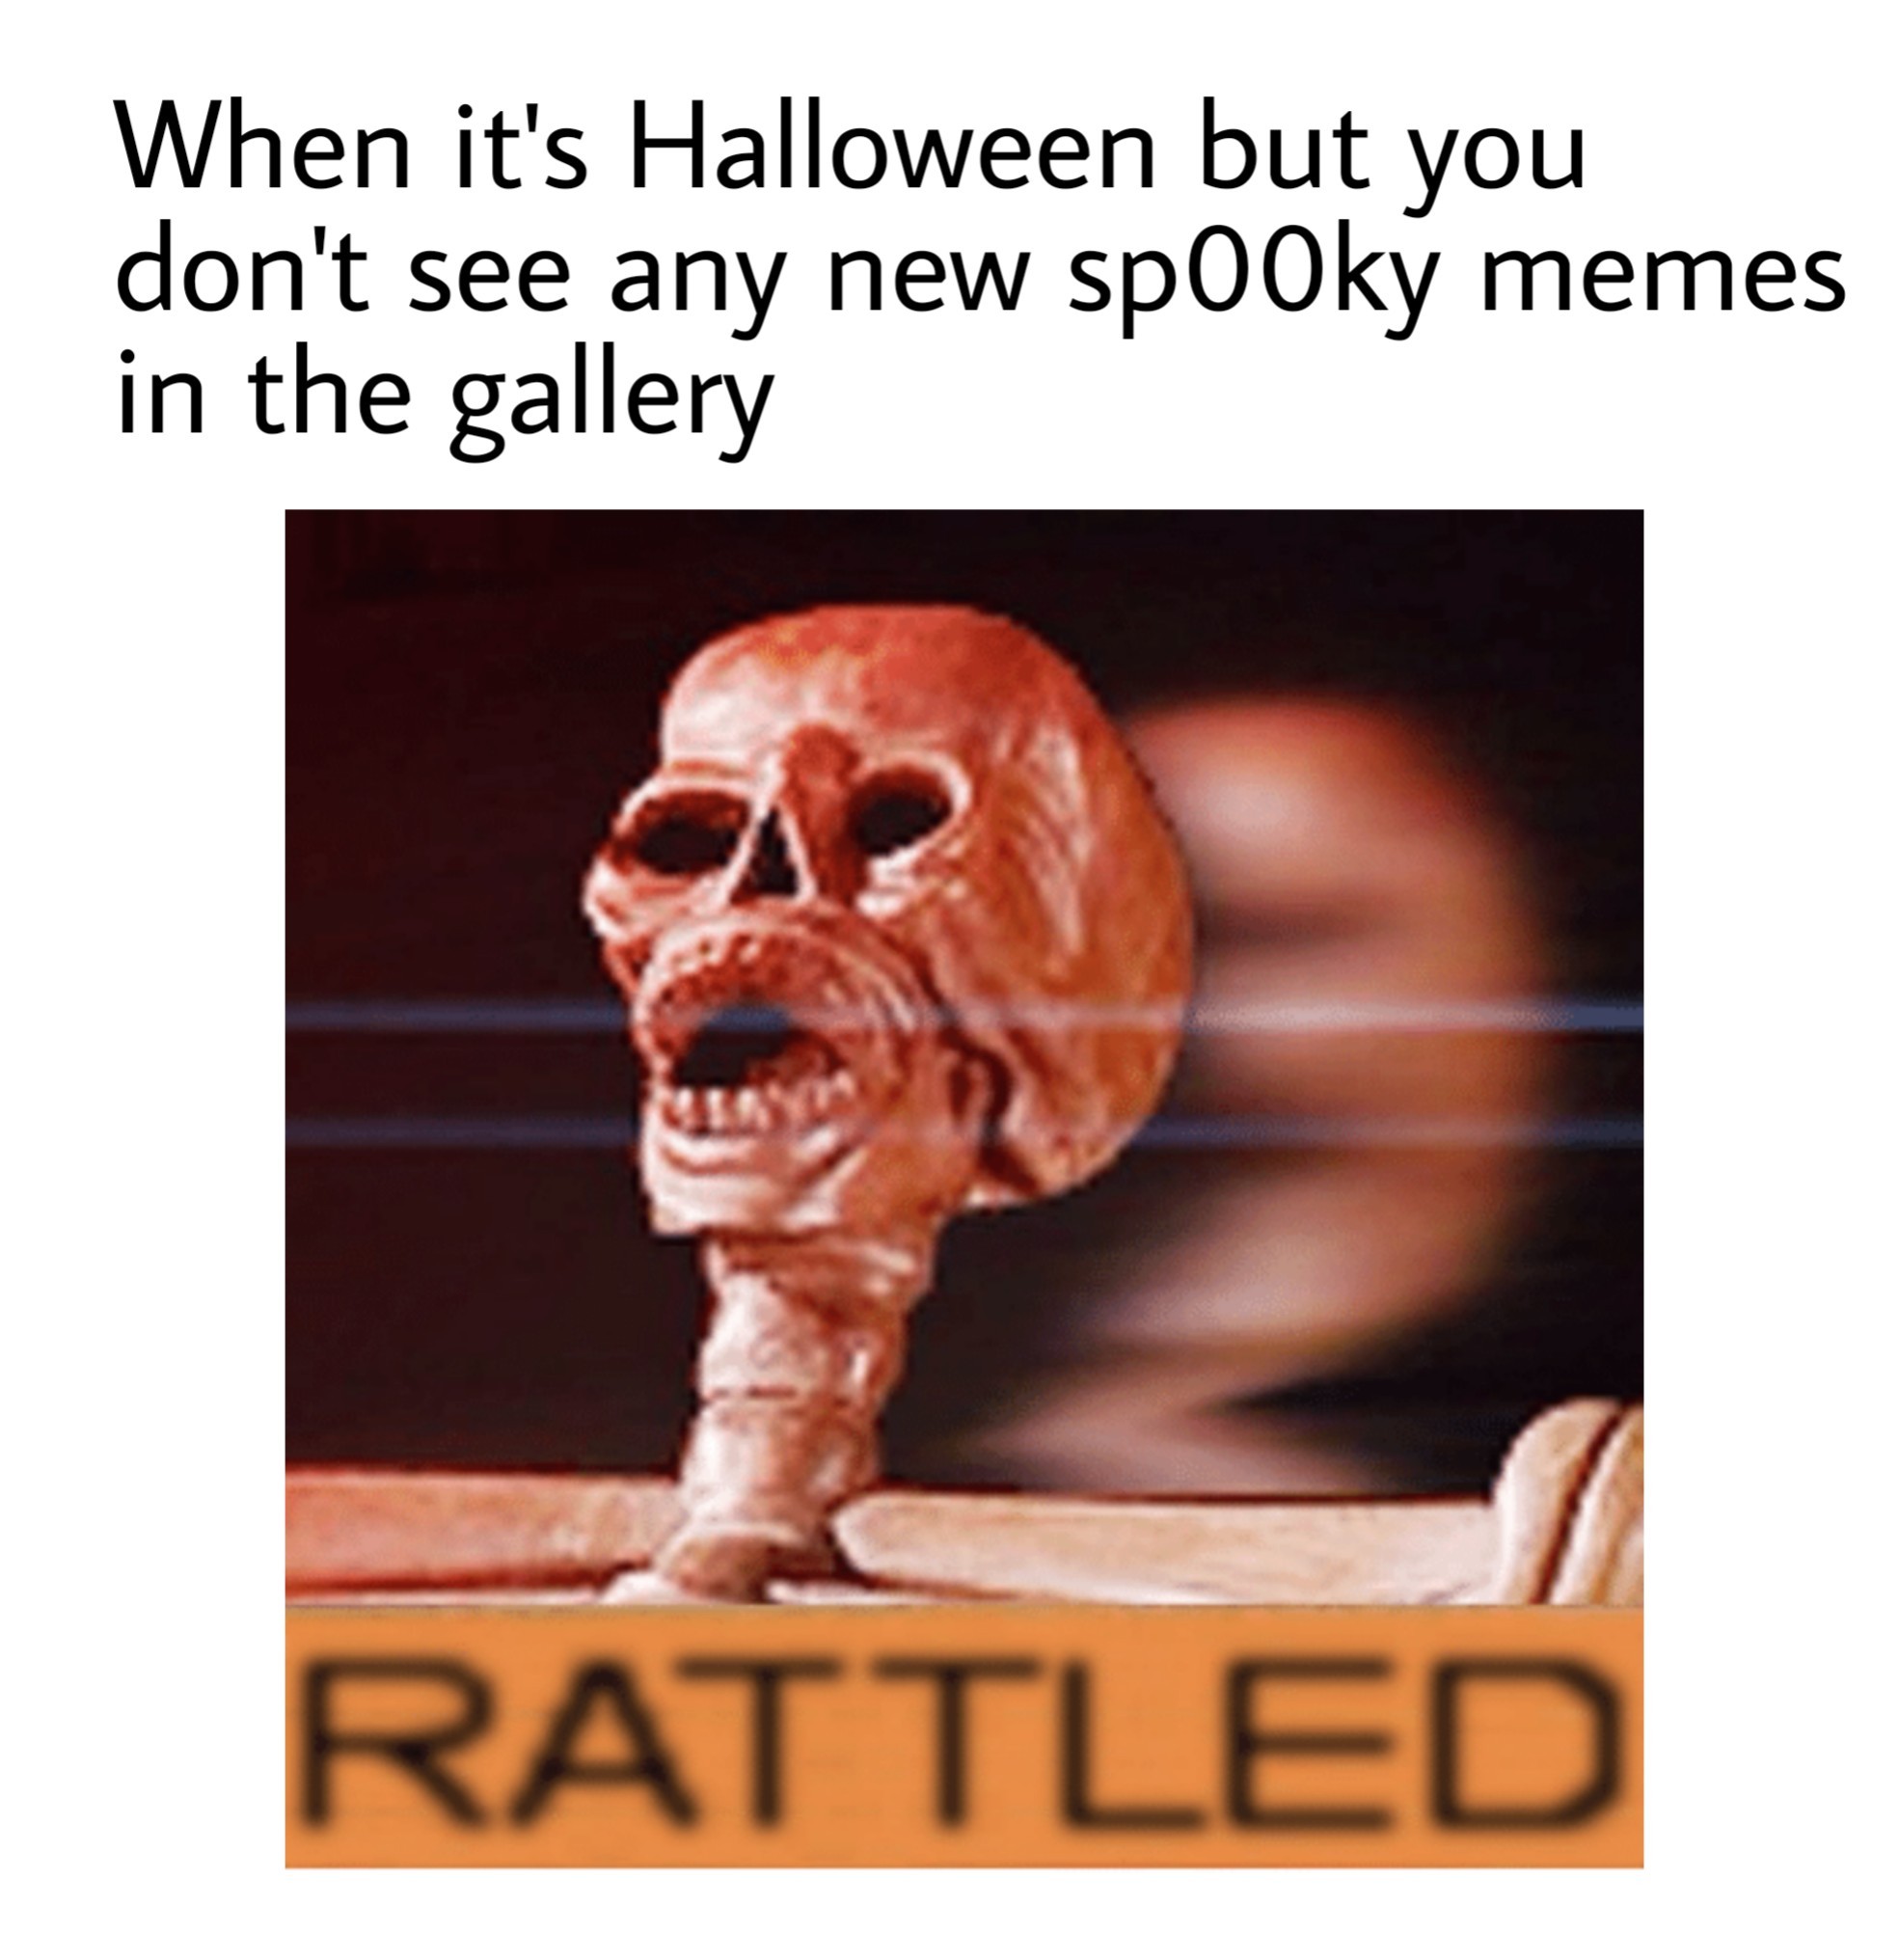 Rattled - meme